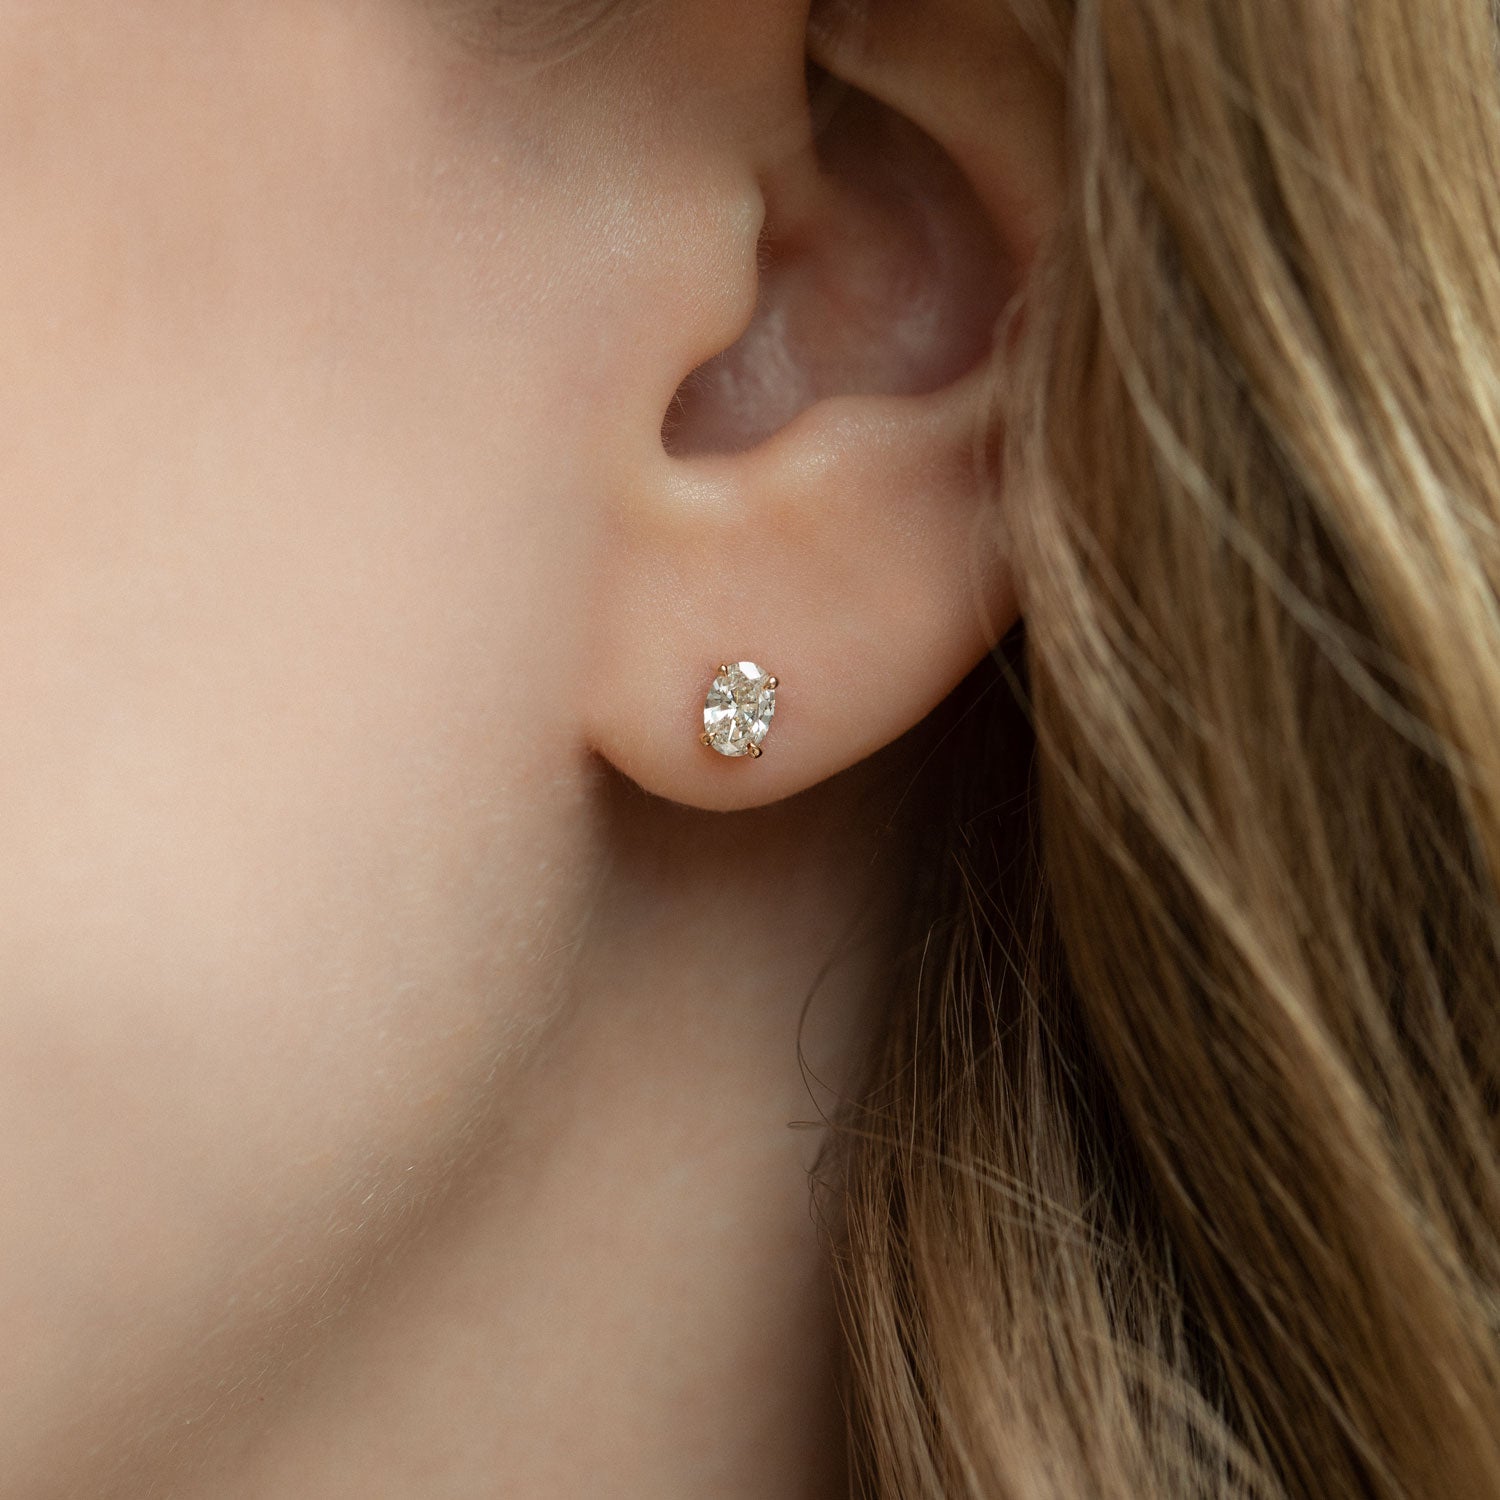 Soli Oval earrings